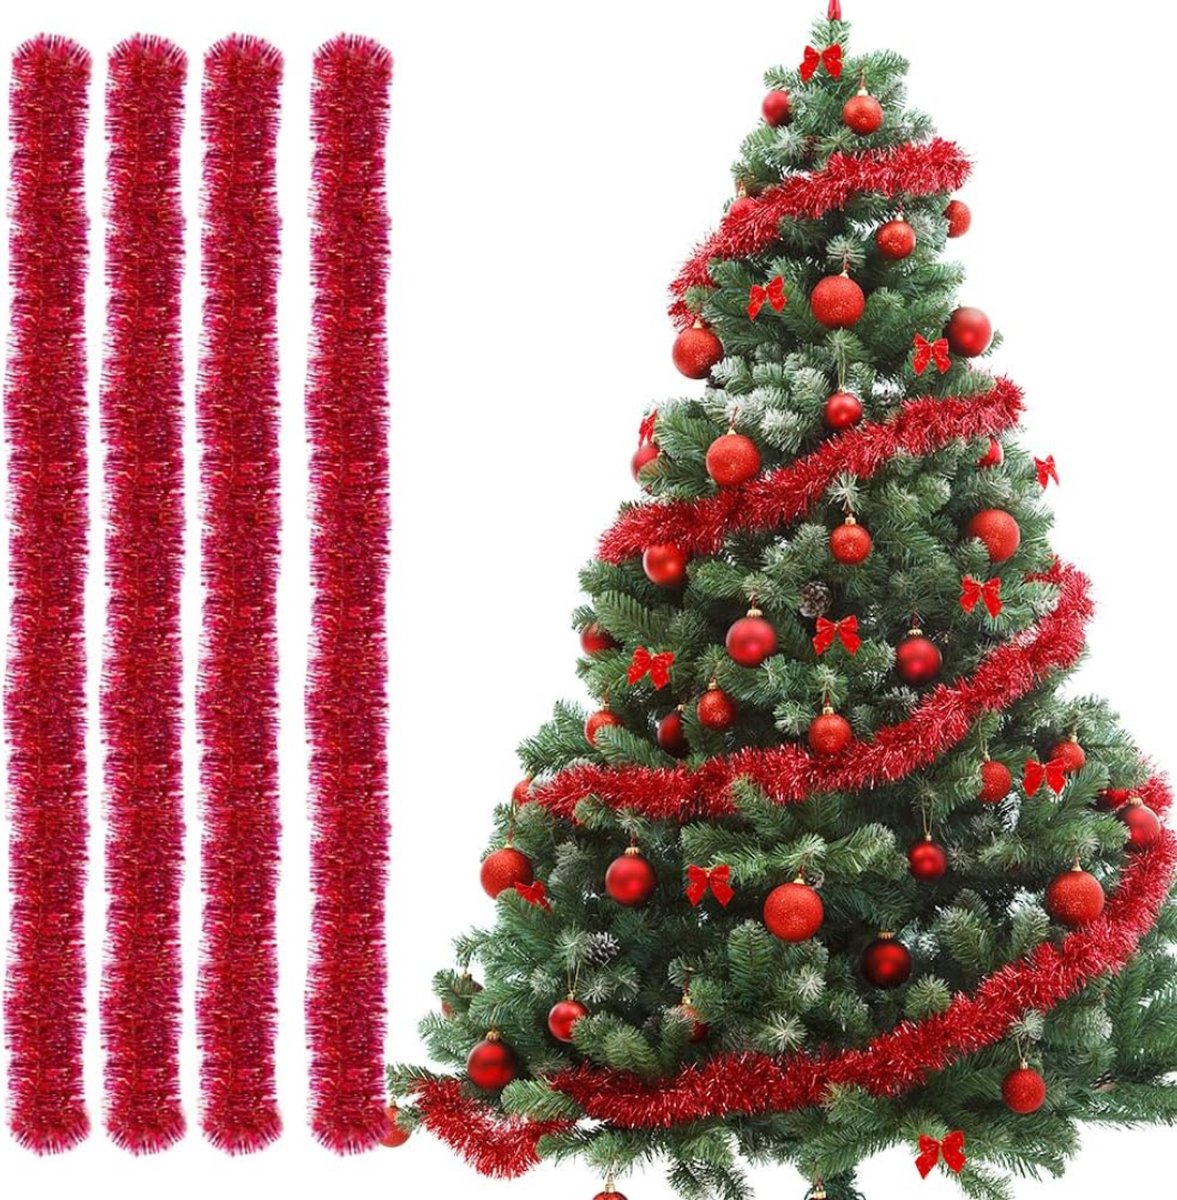 4 kerstslingers - 2M lang per stuk - kerstboom decoratie